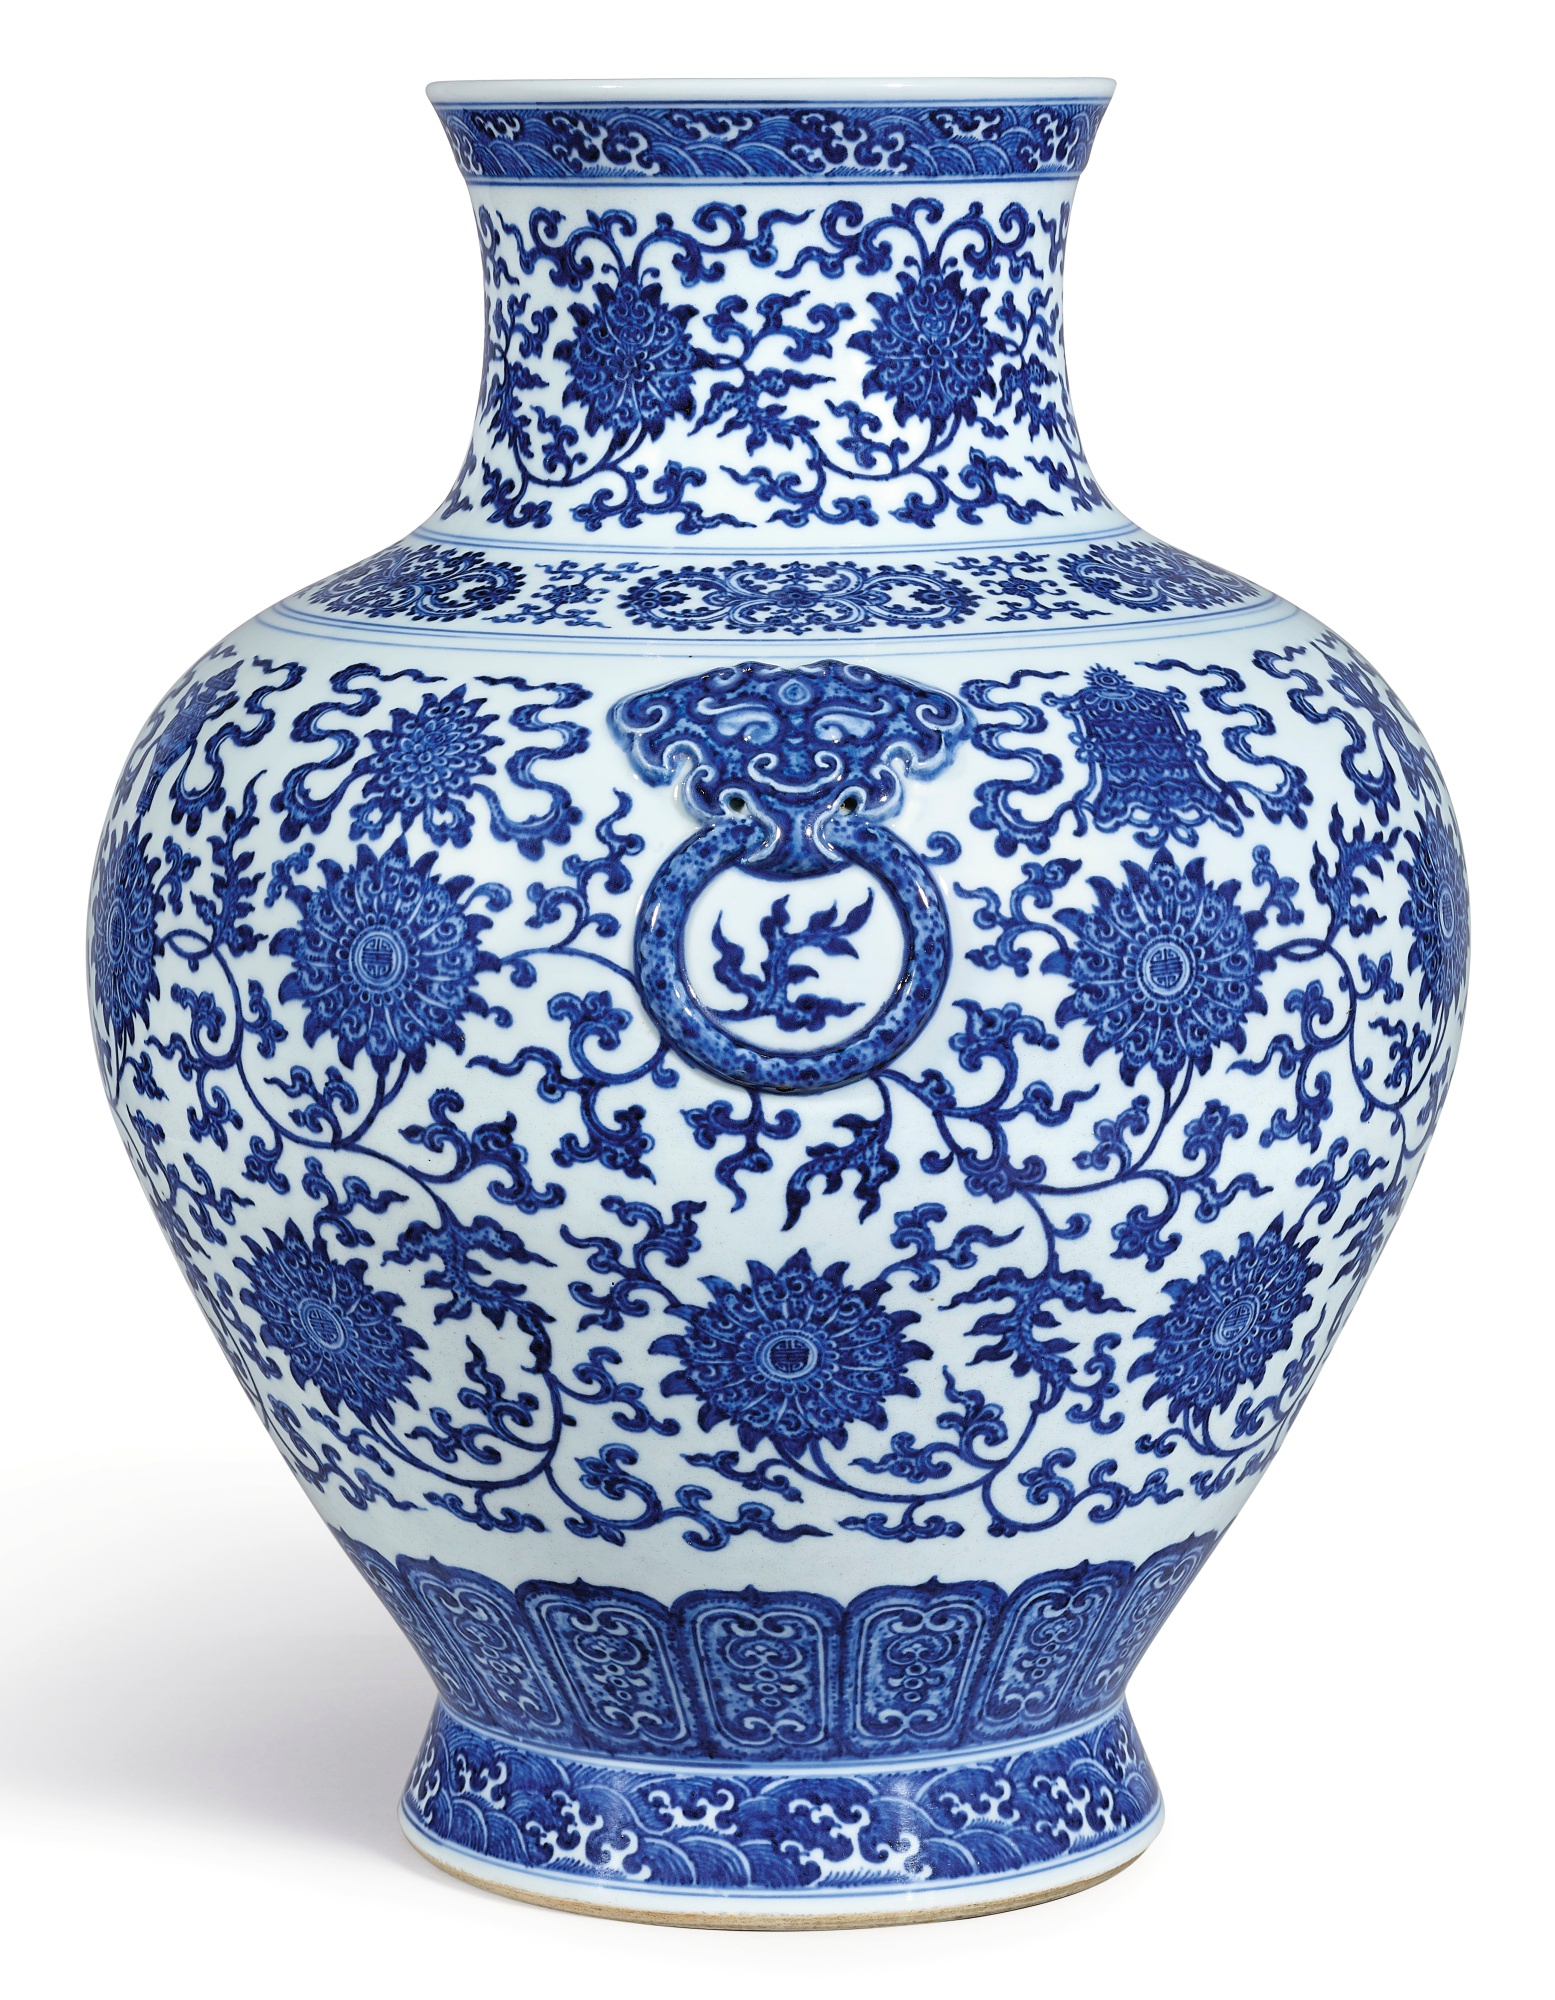 Dekorative chinesische Porzellan Design Vase Blau / Gold 21 cm NOS China 